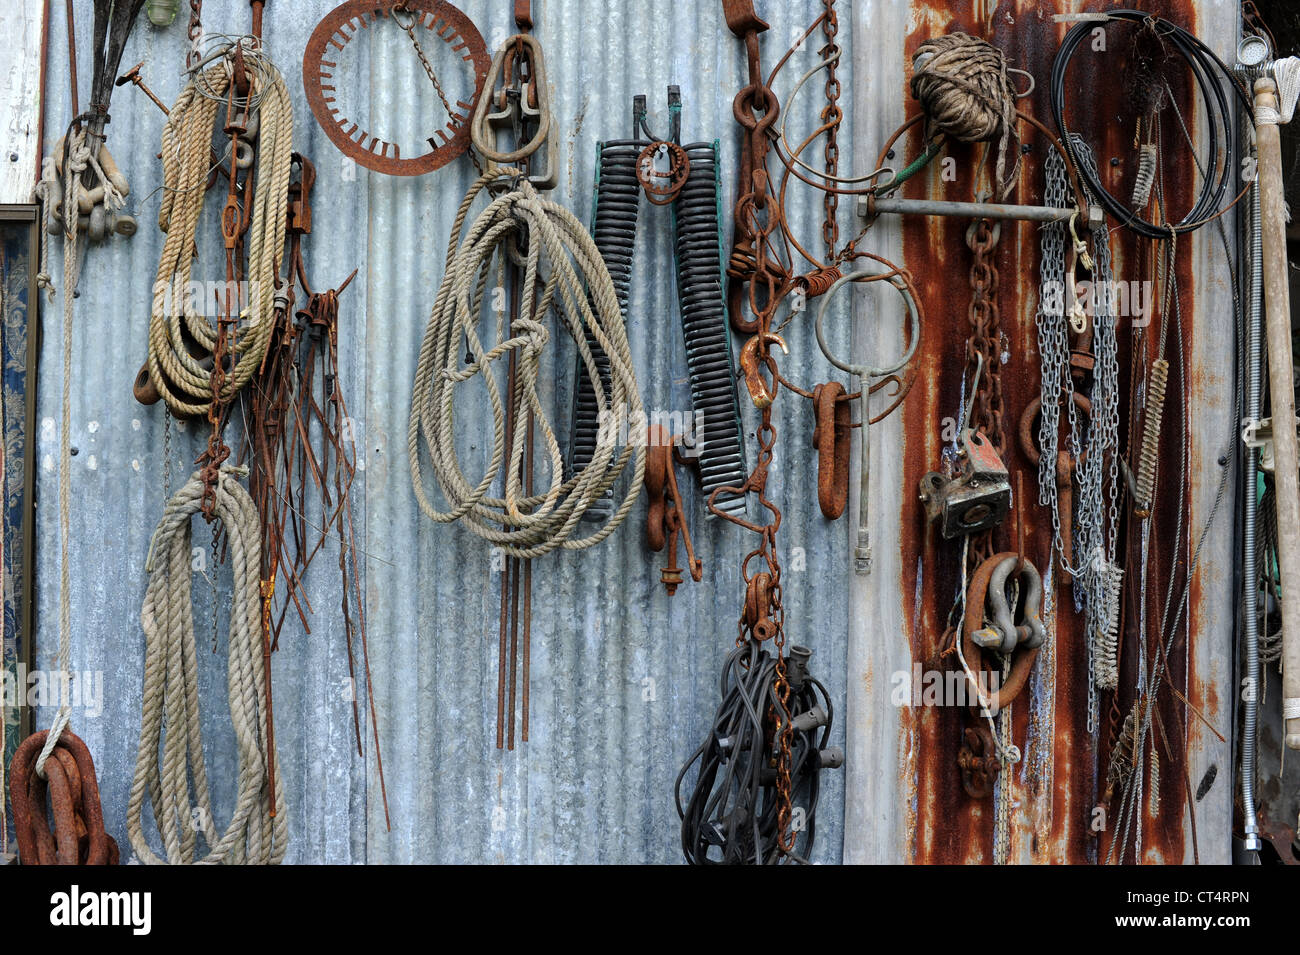 Una colección de los siglos xix y xx basura industrial se cuelga en una pared de hierro corrugado. Foto de stock